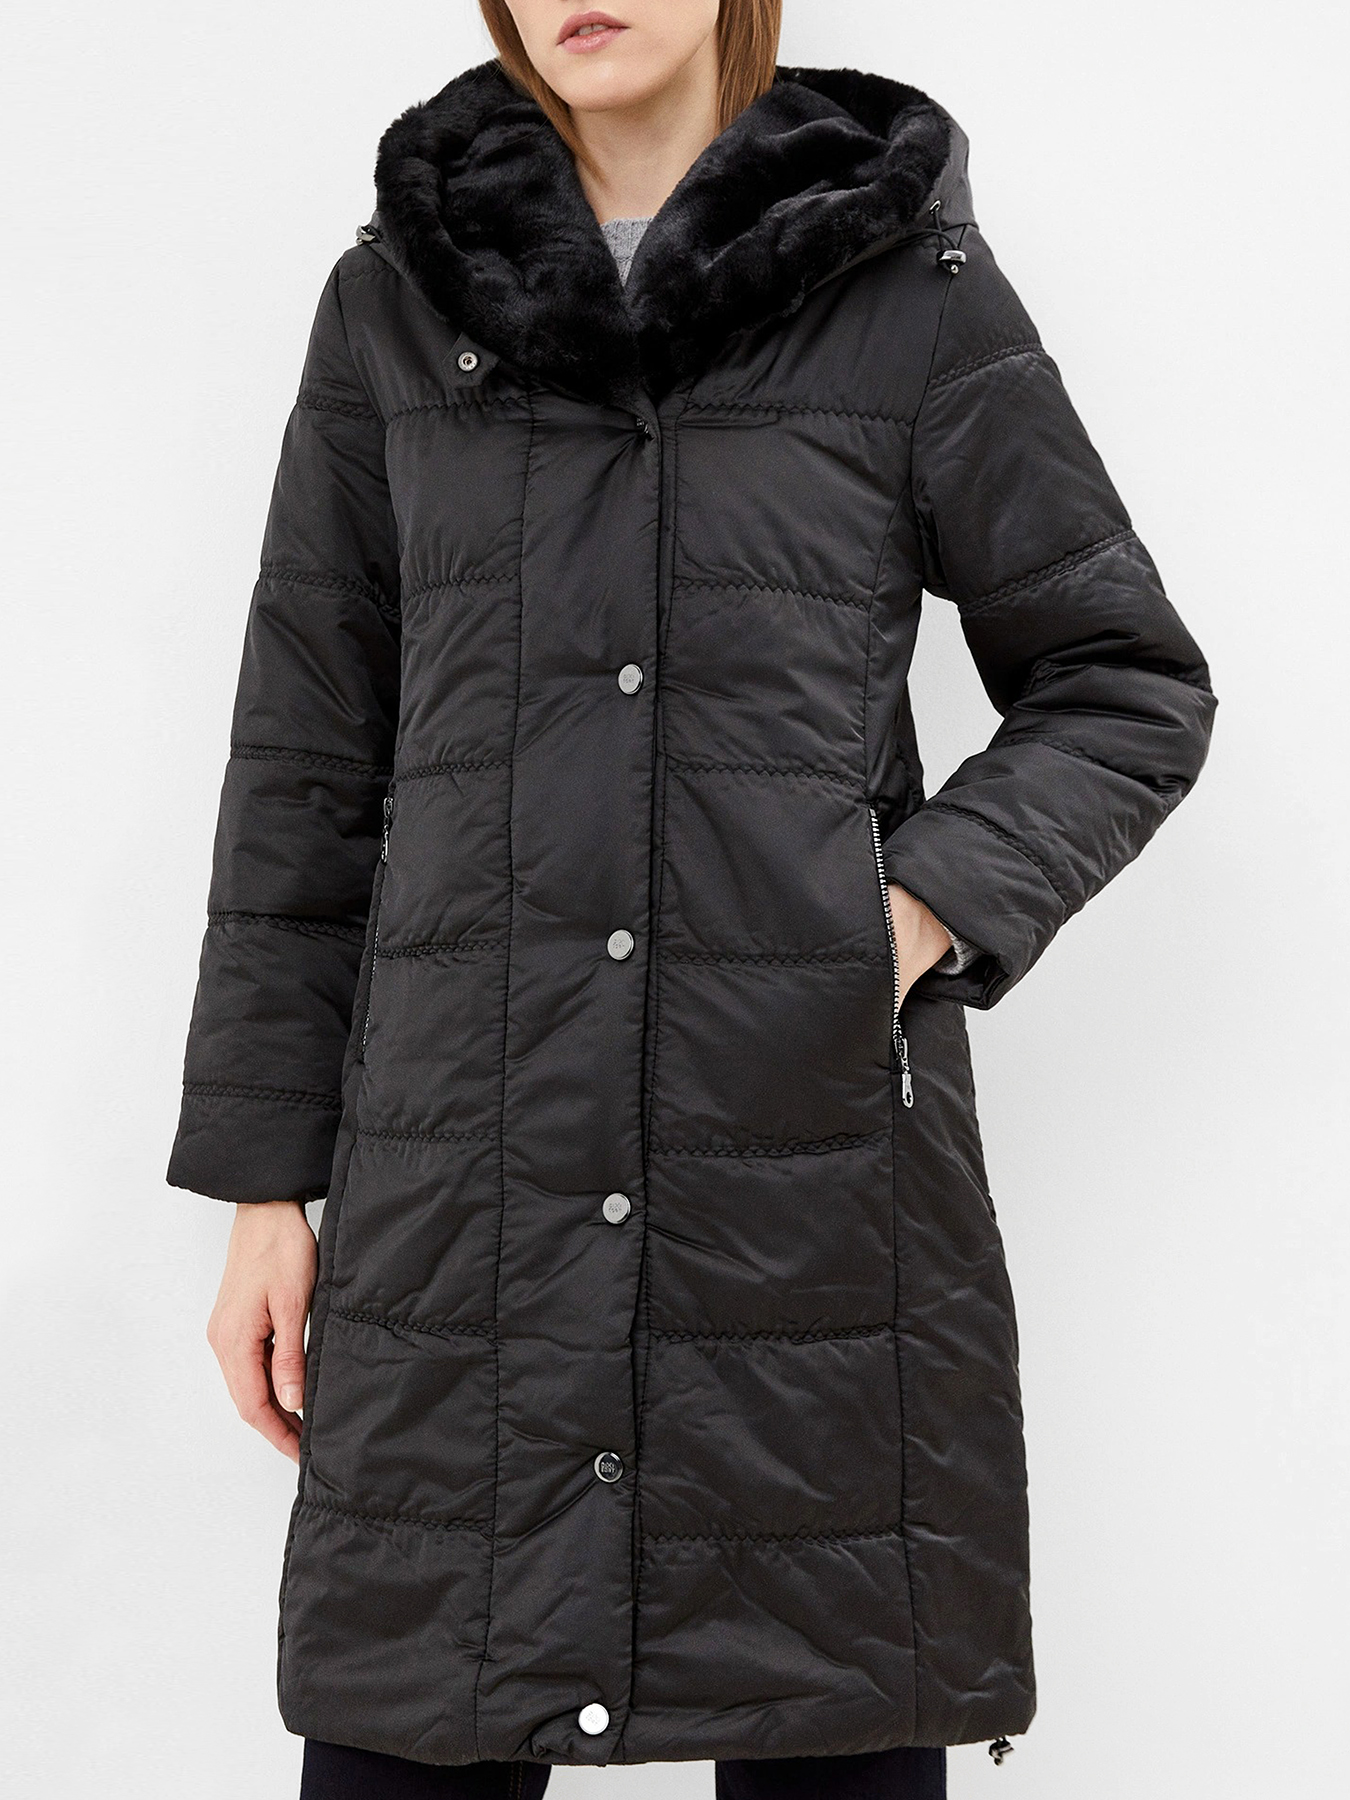 Пальто зимнее Dixi Coat 433590-026, цвет черный, размер 56